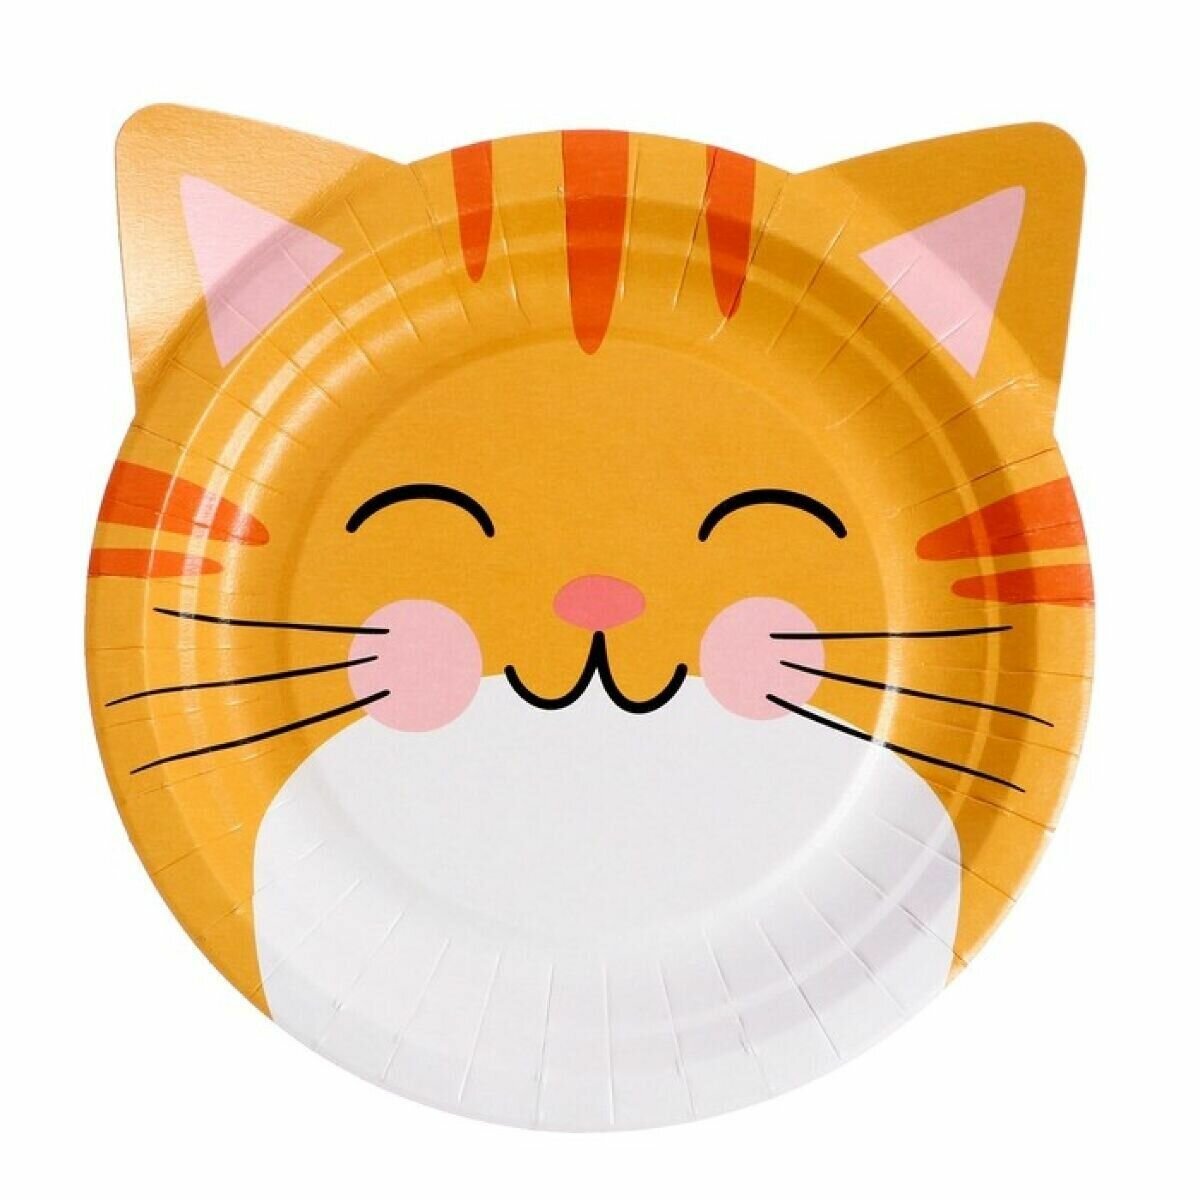 Набор бумажных тарелок «Кошки с ушками», в т/у плёнке, 6 шт, 18 см